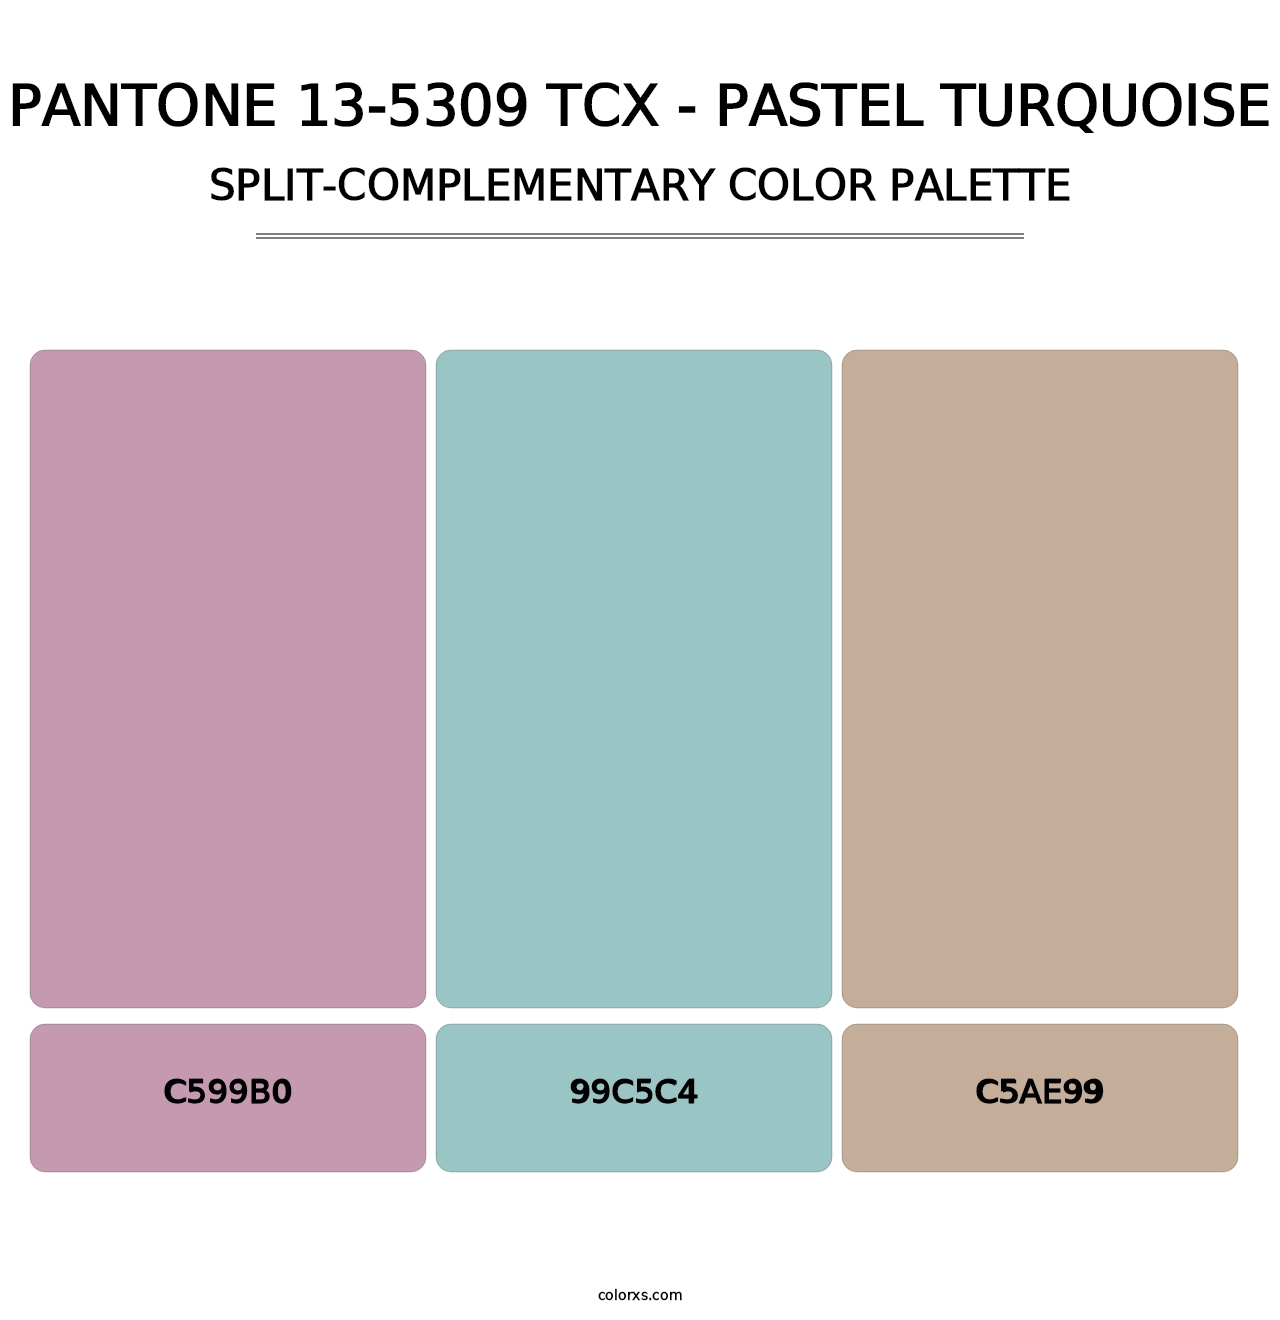 PANTONE 13-5309 TCX - Pastel Turquoise - Split-Complementary Color Palette